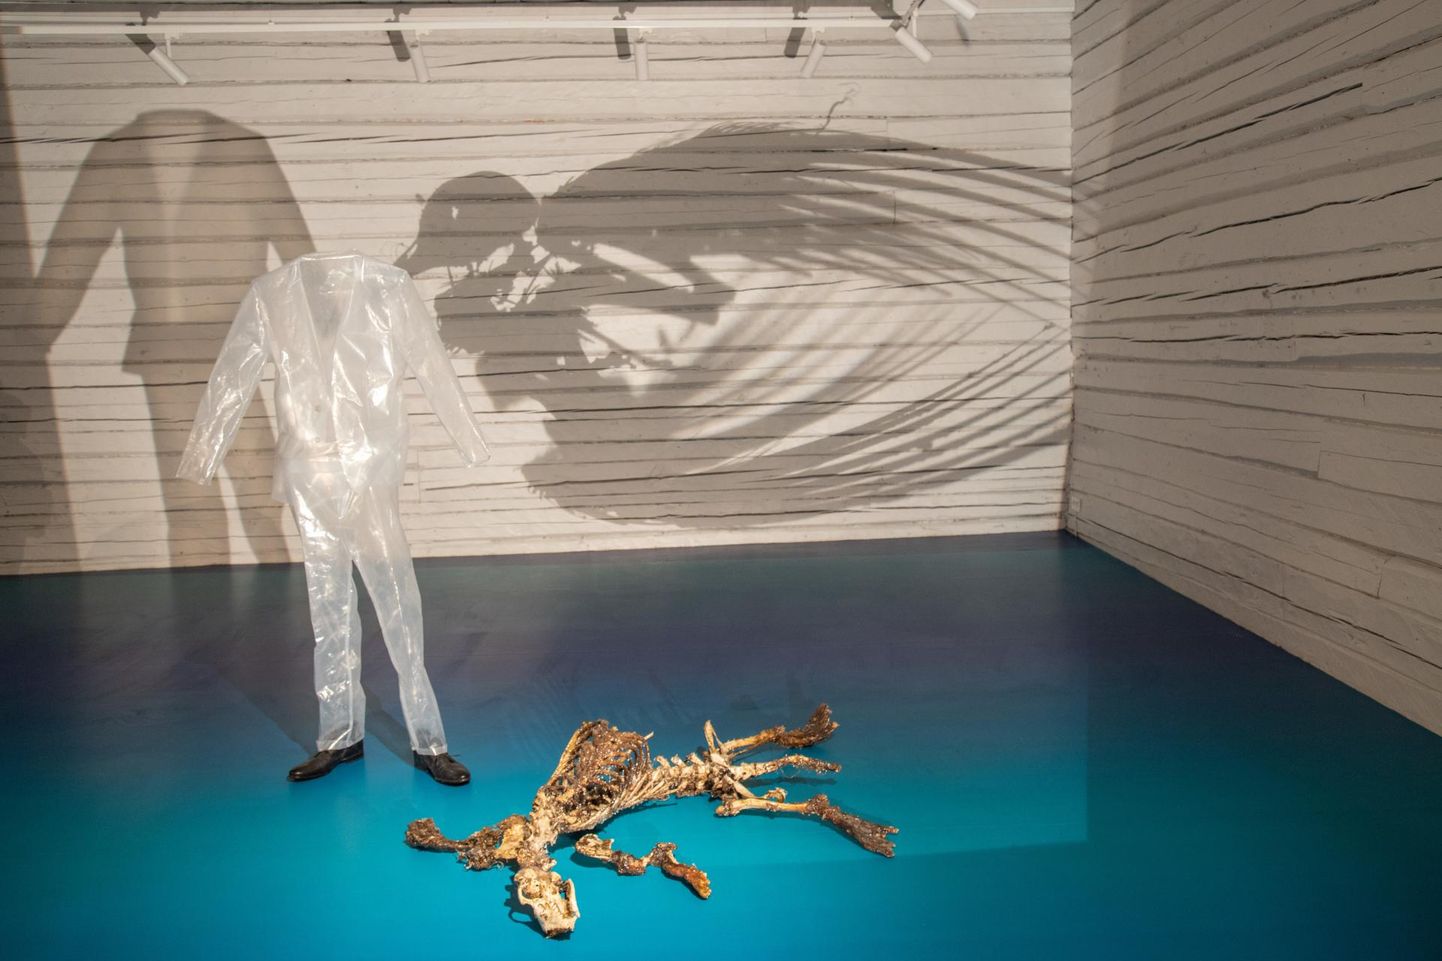 Tänasest on Rüki galeriis avatud näitus, mis käsitleb inimese ja looma suhet.